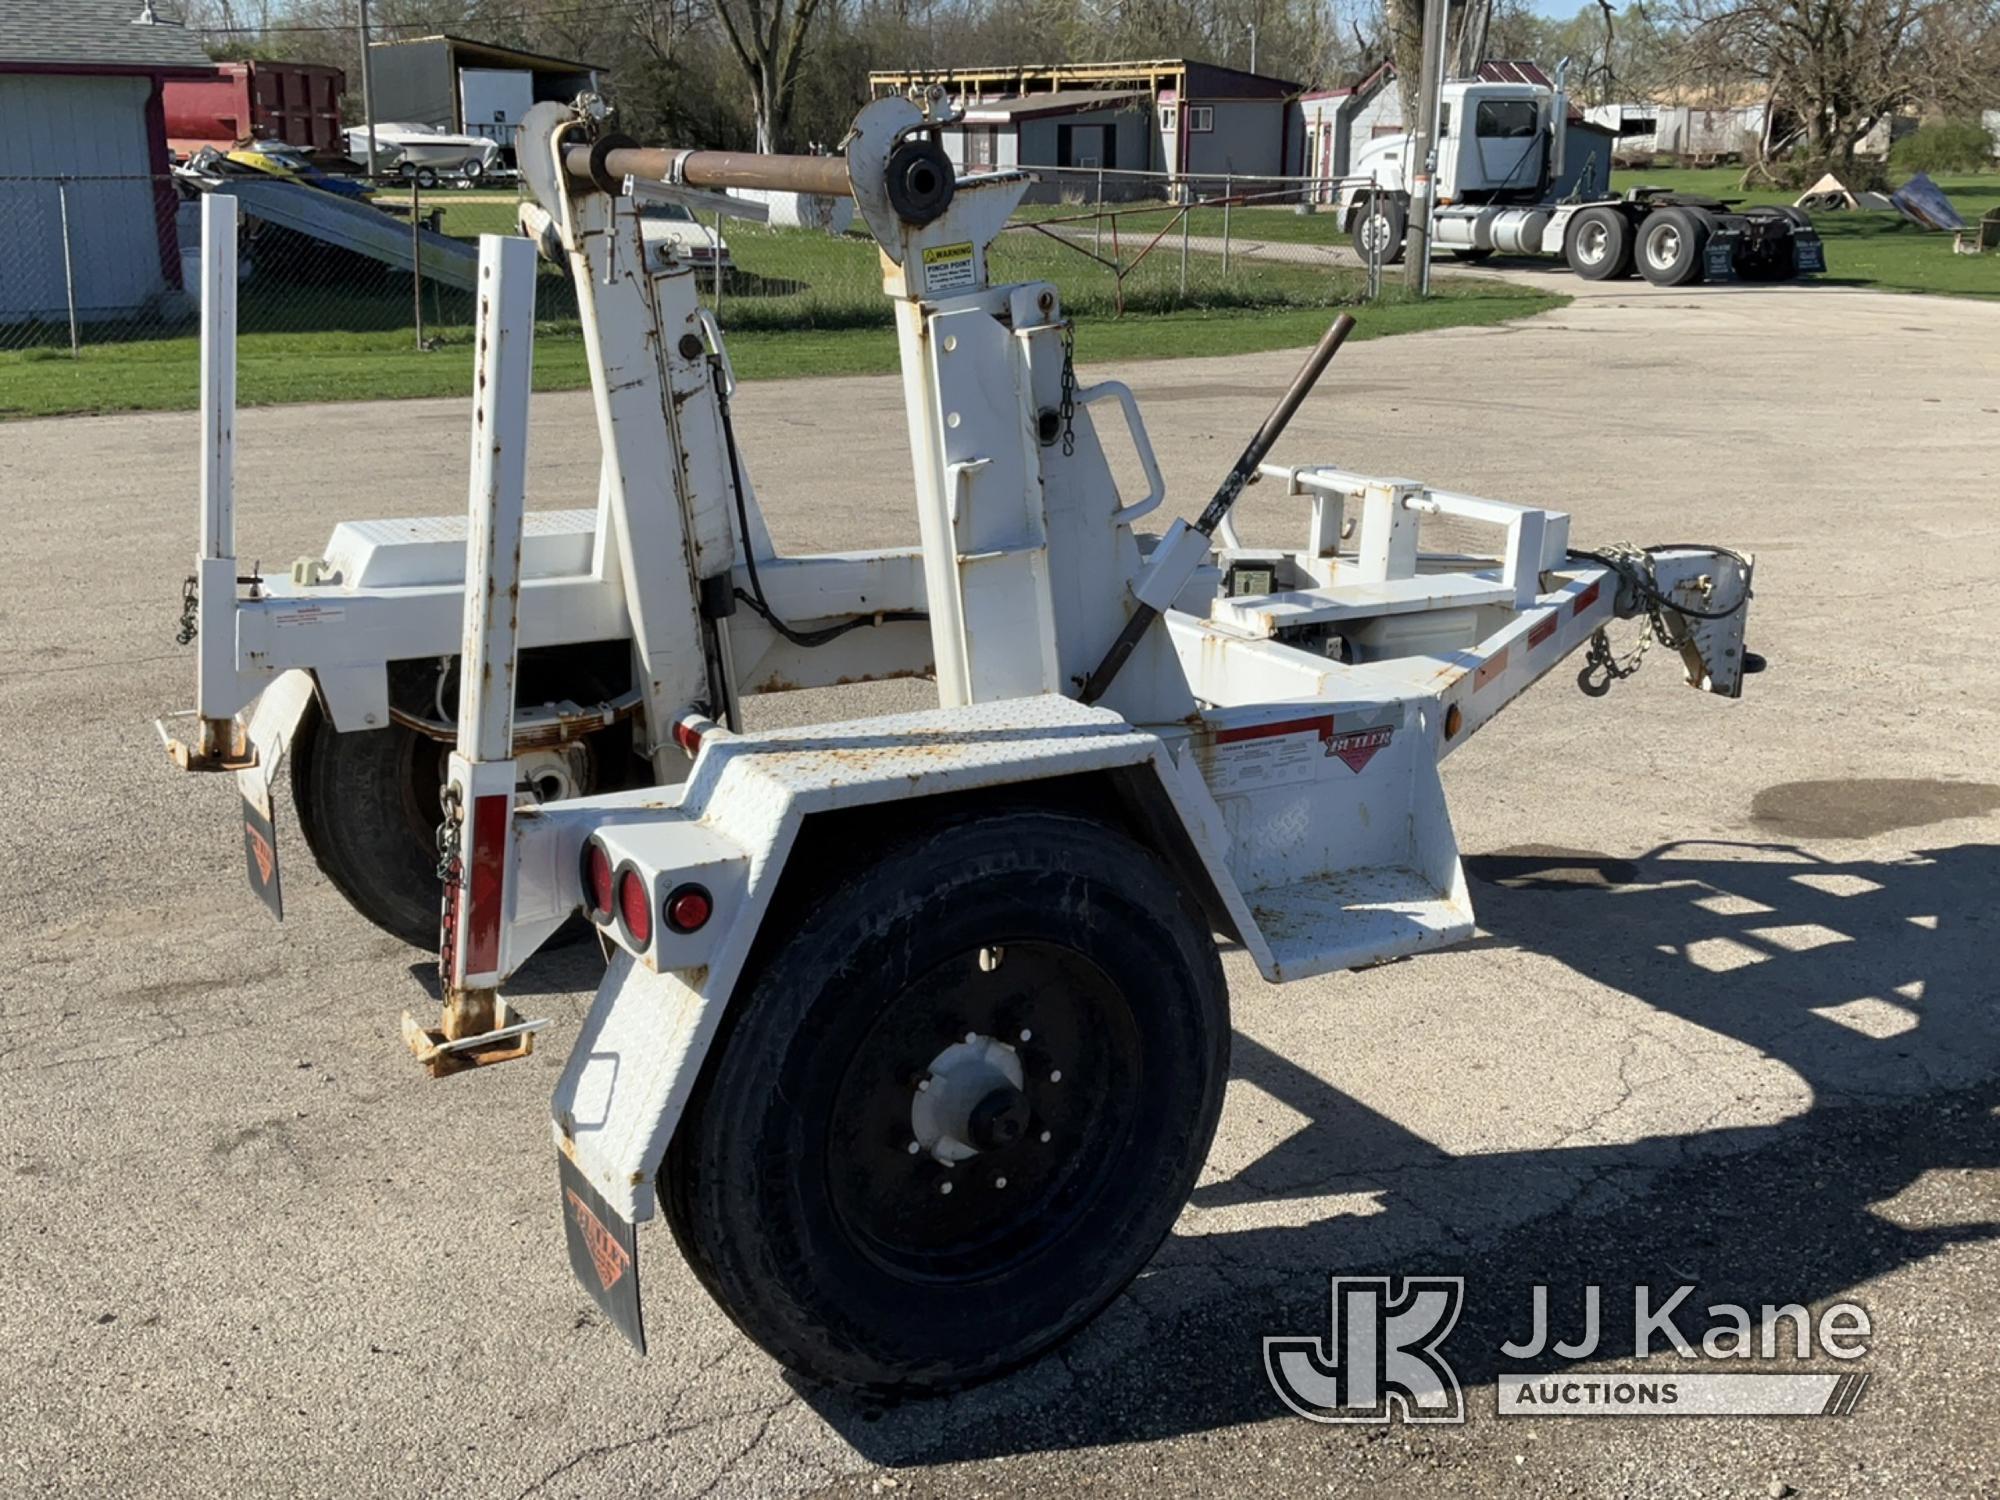 (South Beloit, IL) 2019 Butler HWSC-10 Self-Loading Hydraulic Reel Trailer Operates